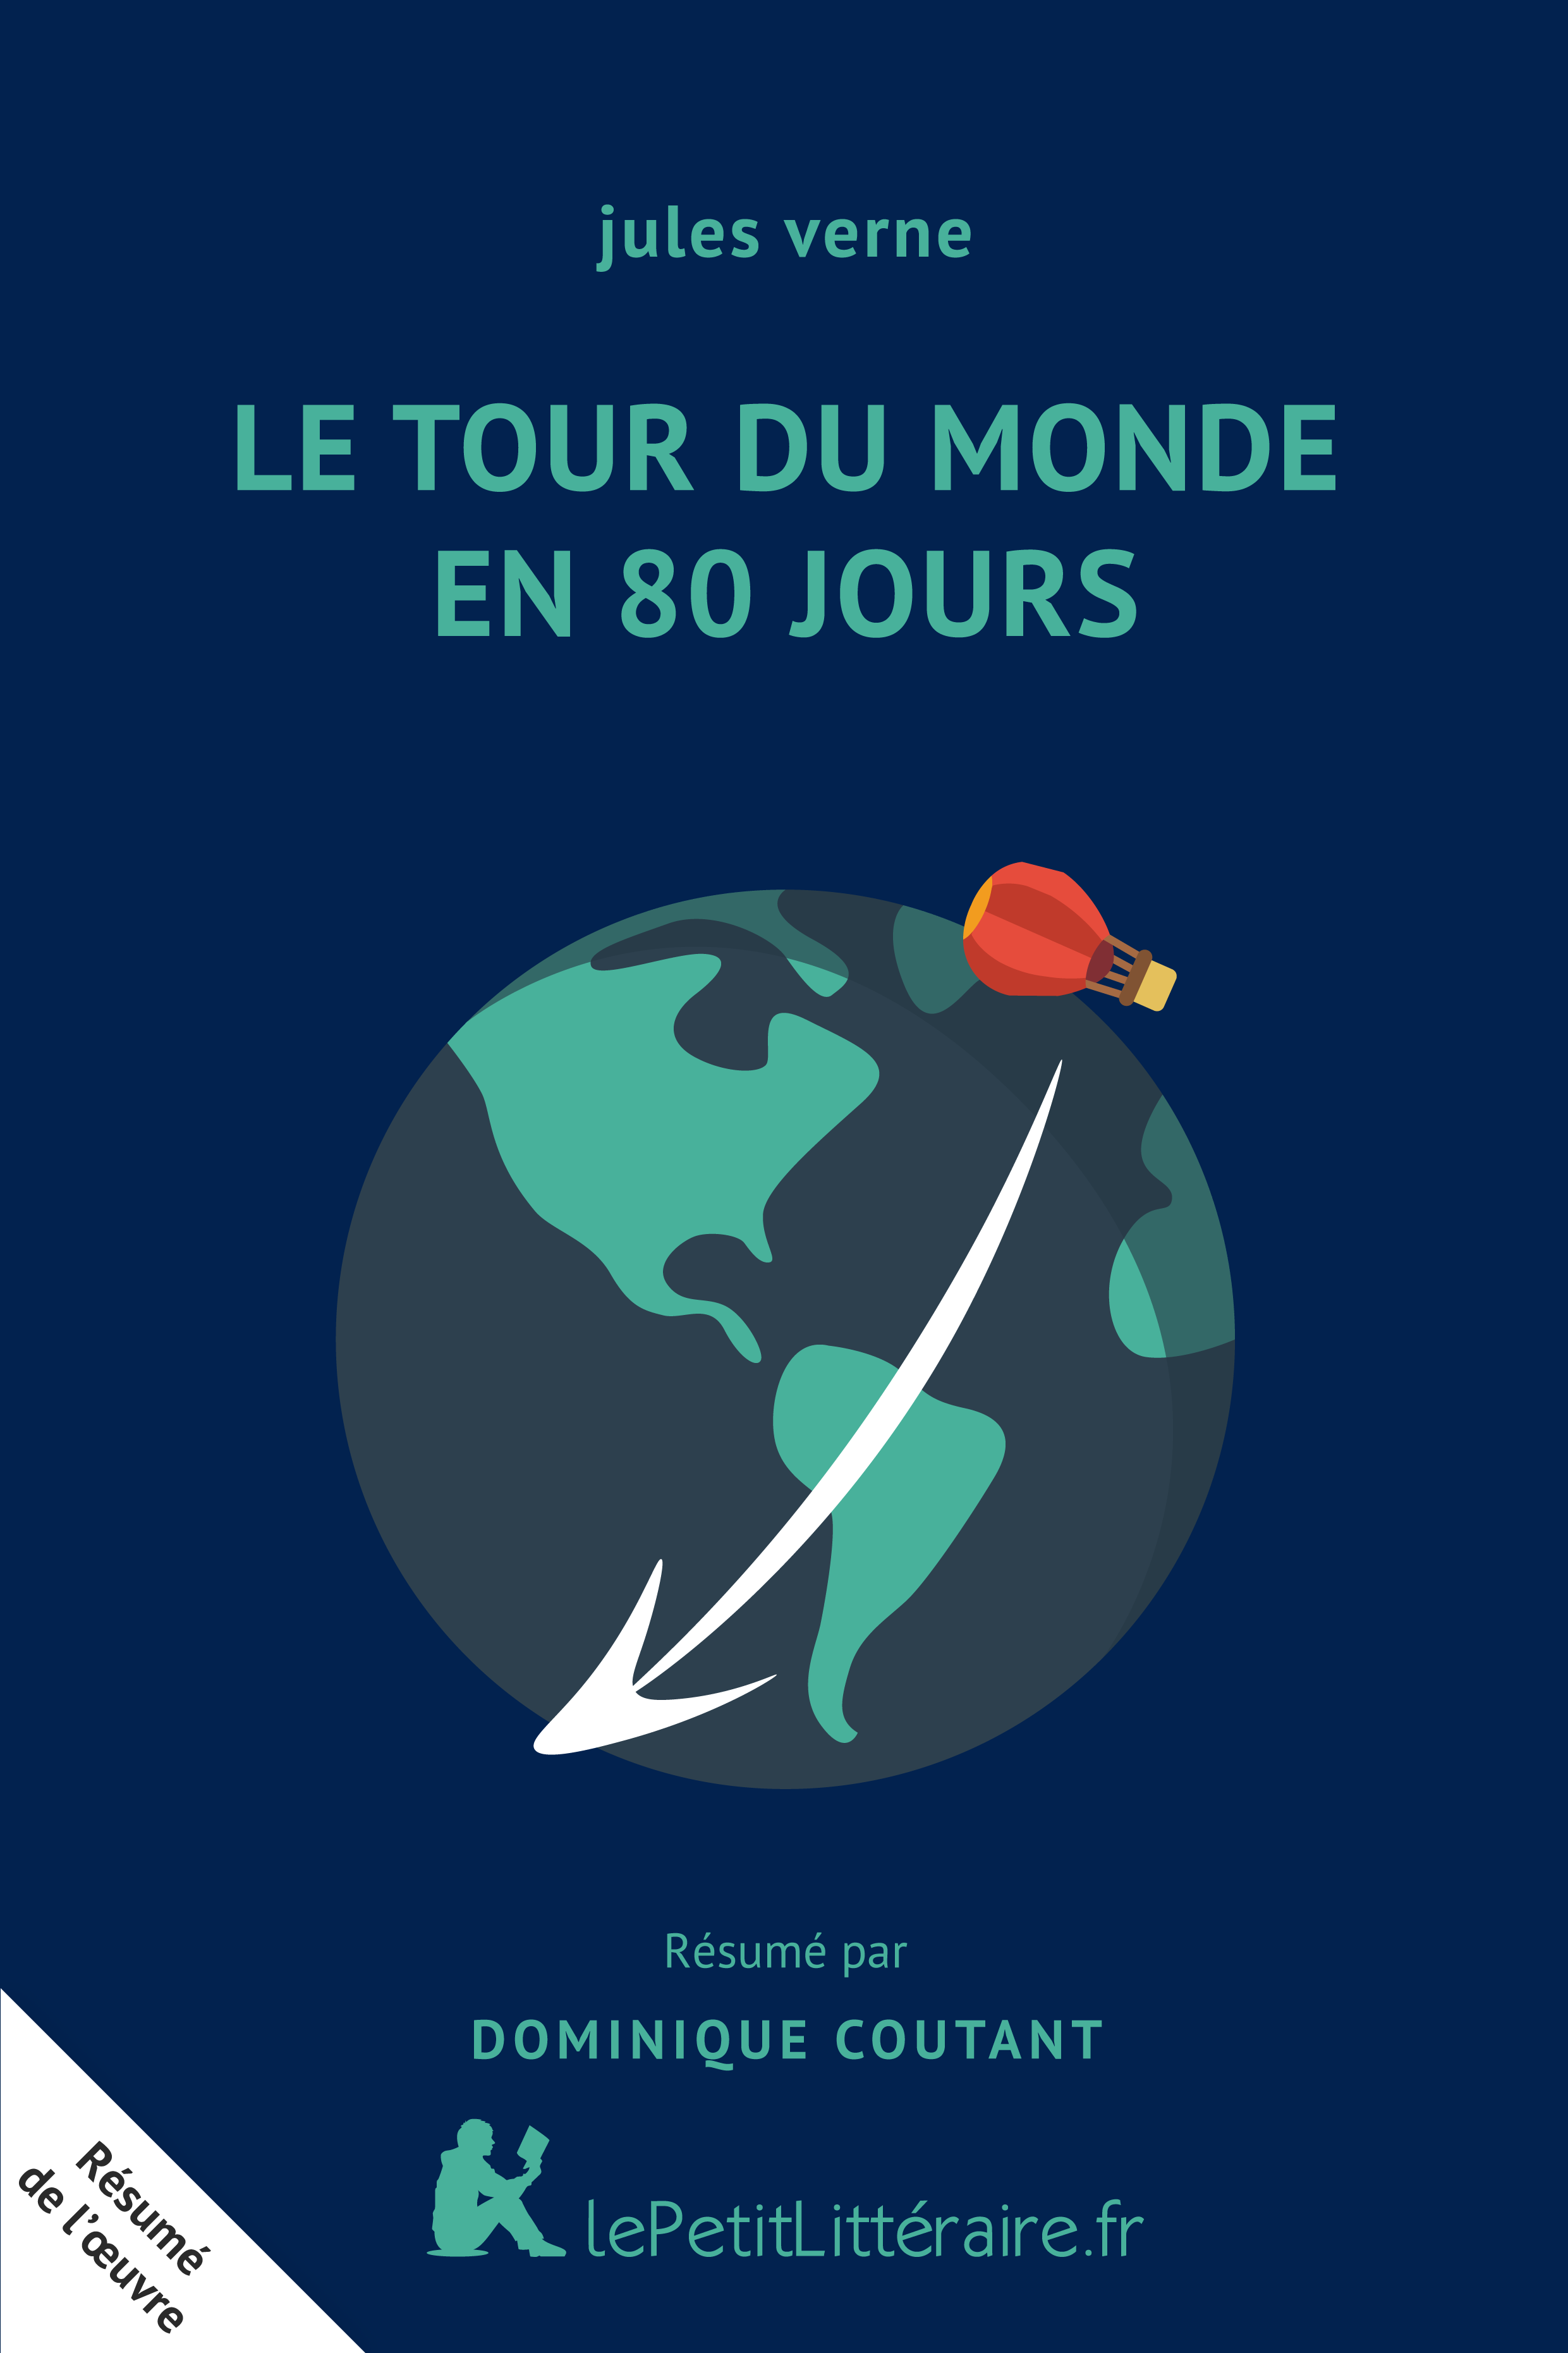 lePetitLitteraire.fr - Le Tour du monde en 80 jours ...